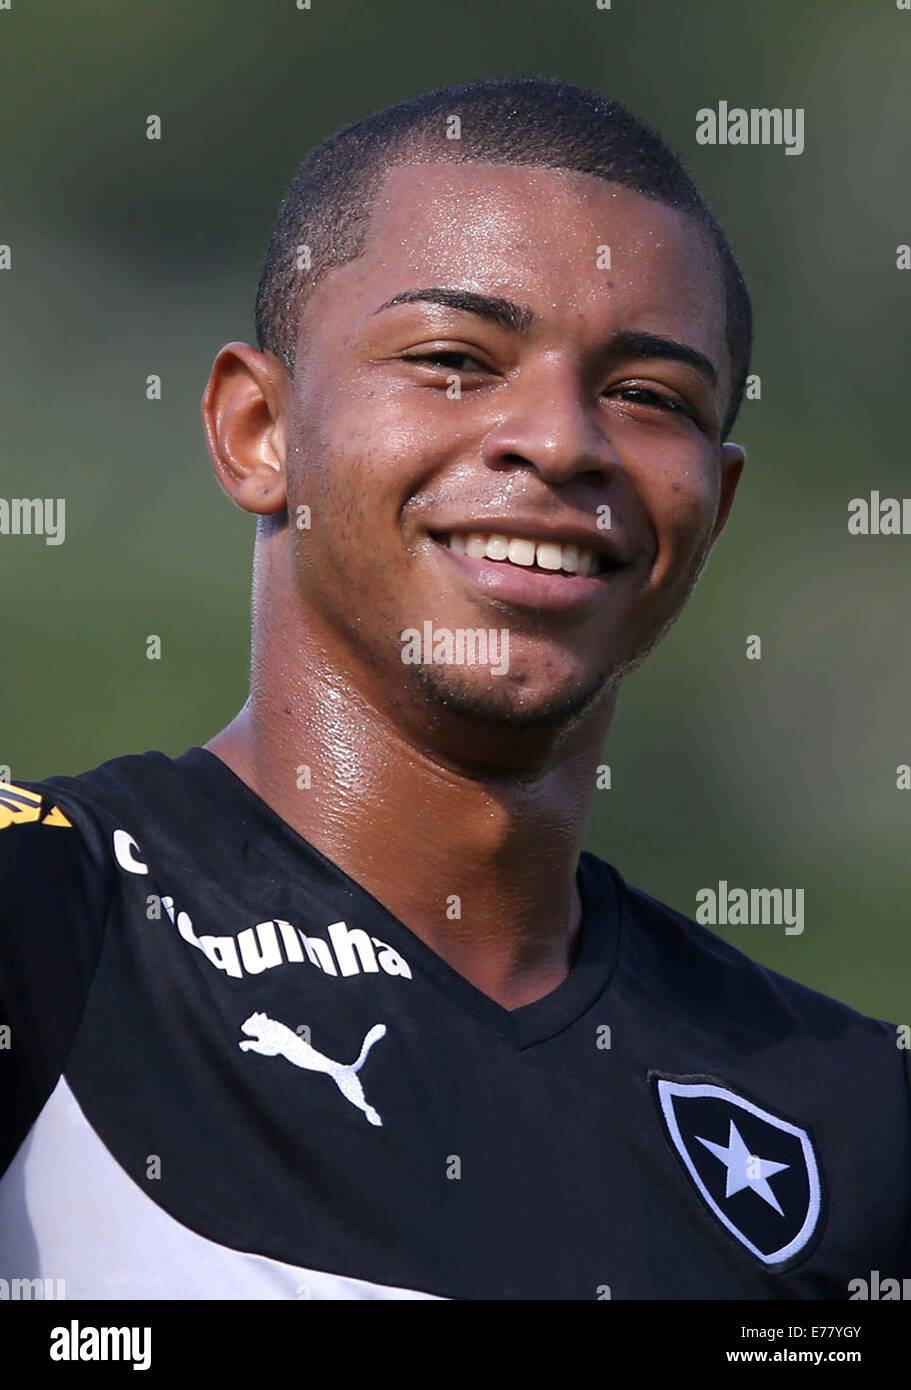 Brazilian Football League Serie A / ( Botafogo de Futebol e Regatas ) - Fabiano Nascimento - brazilian-football-league-serie-a-botafogo-de-futebol-e-regatas-fabiano-E77YGY